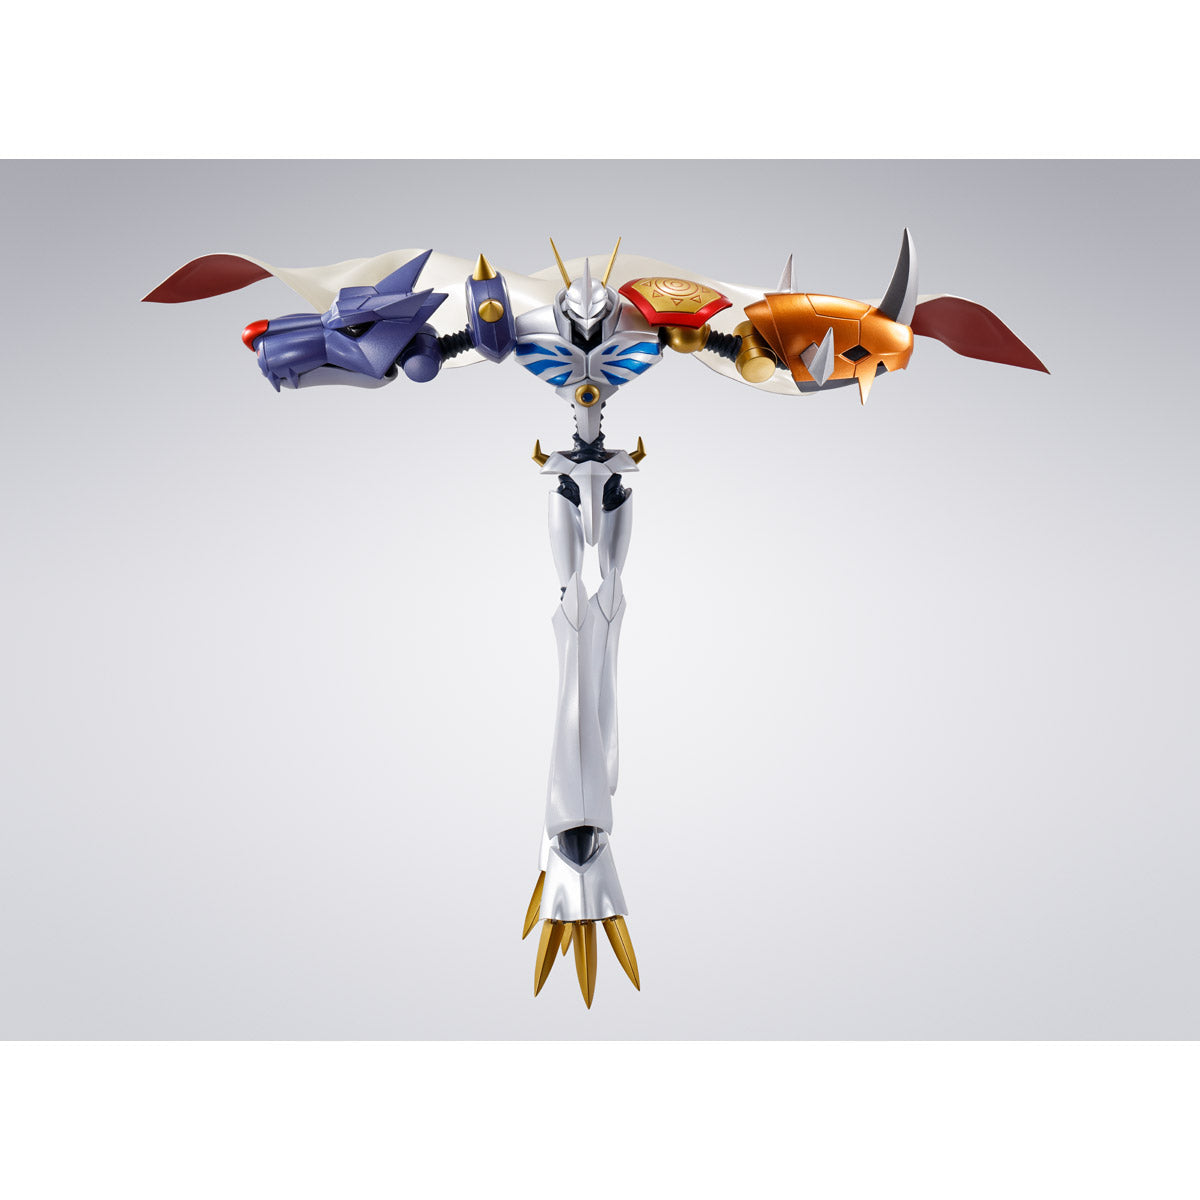 S.H. Figuarts - Digimon - Omegamon [Premium Color Edition]